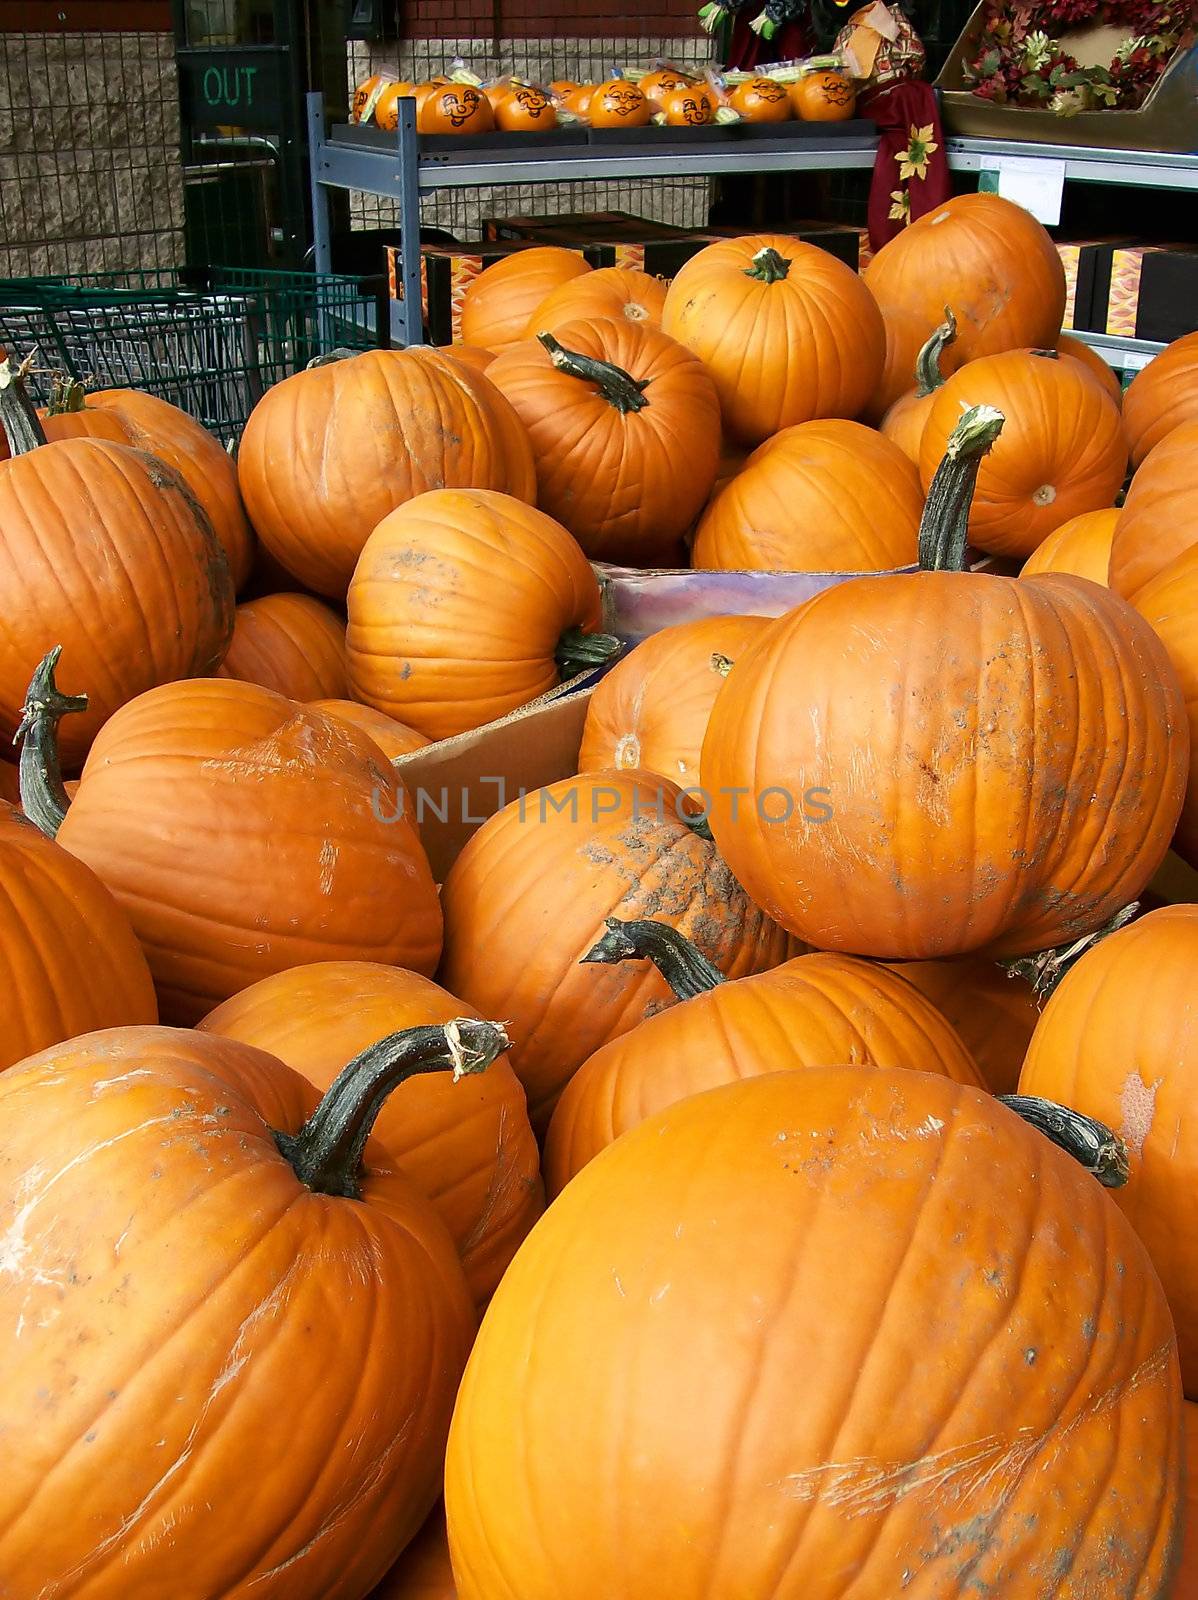 Supermarket Pumpkins by watamyr